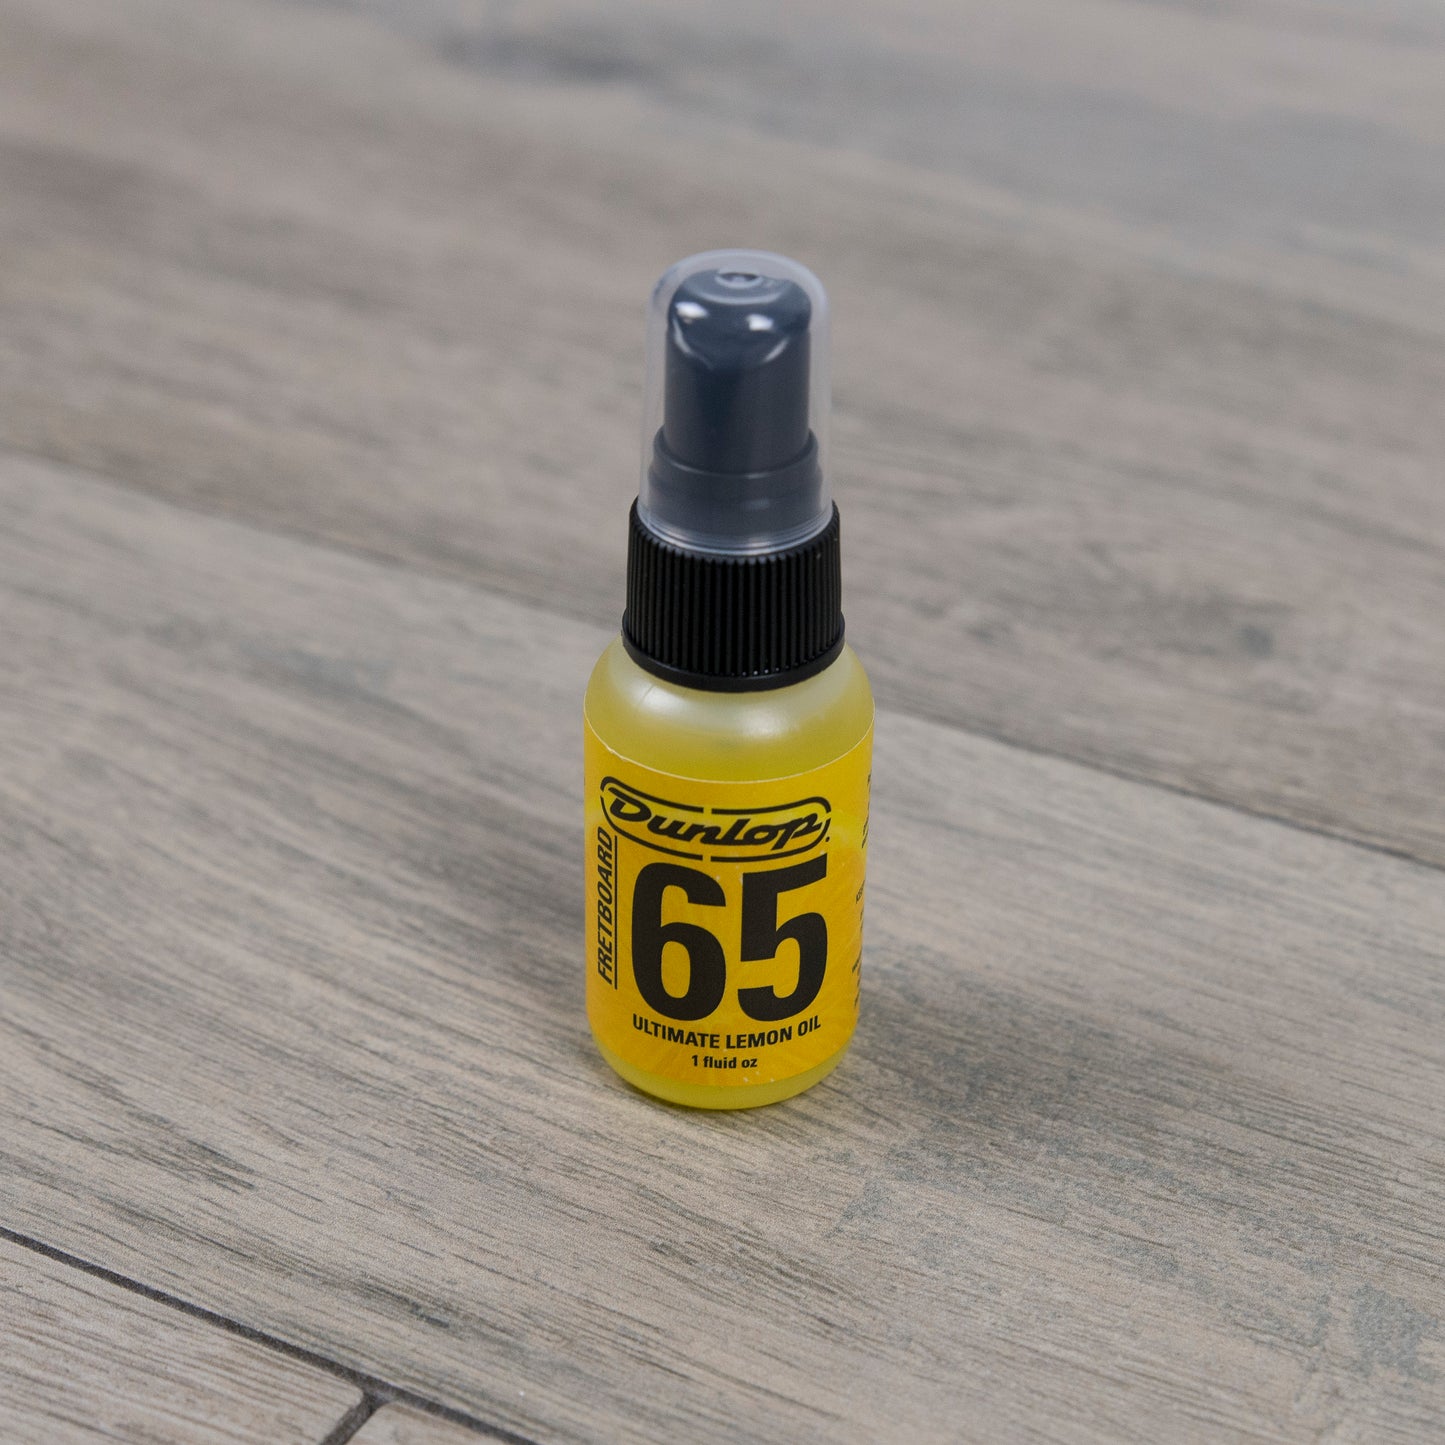 Dunlop Fretboard 65 Ultimate Lemon Oil, 1 oz